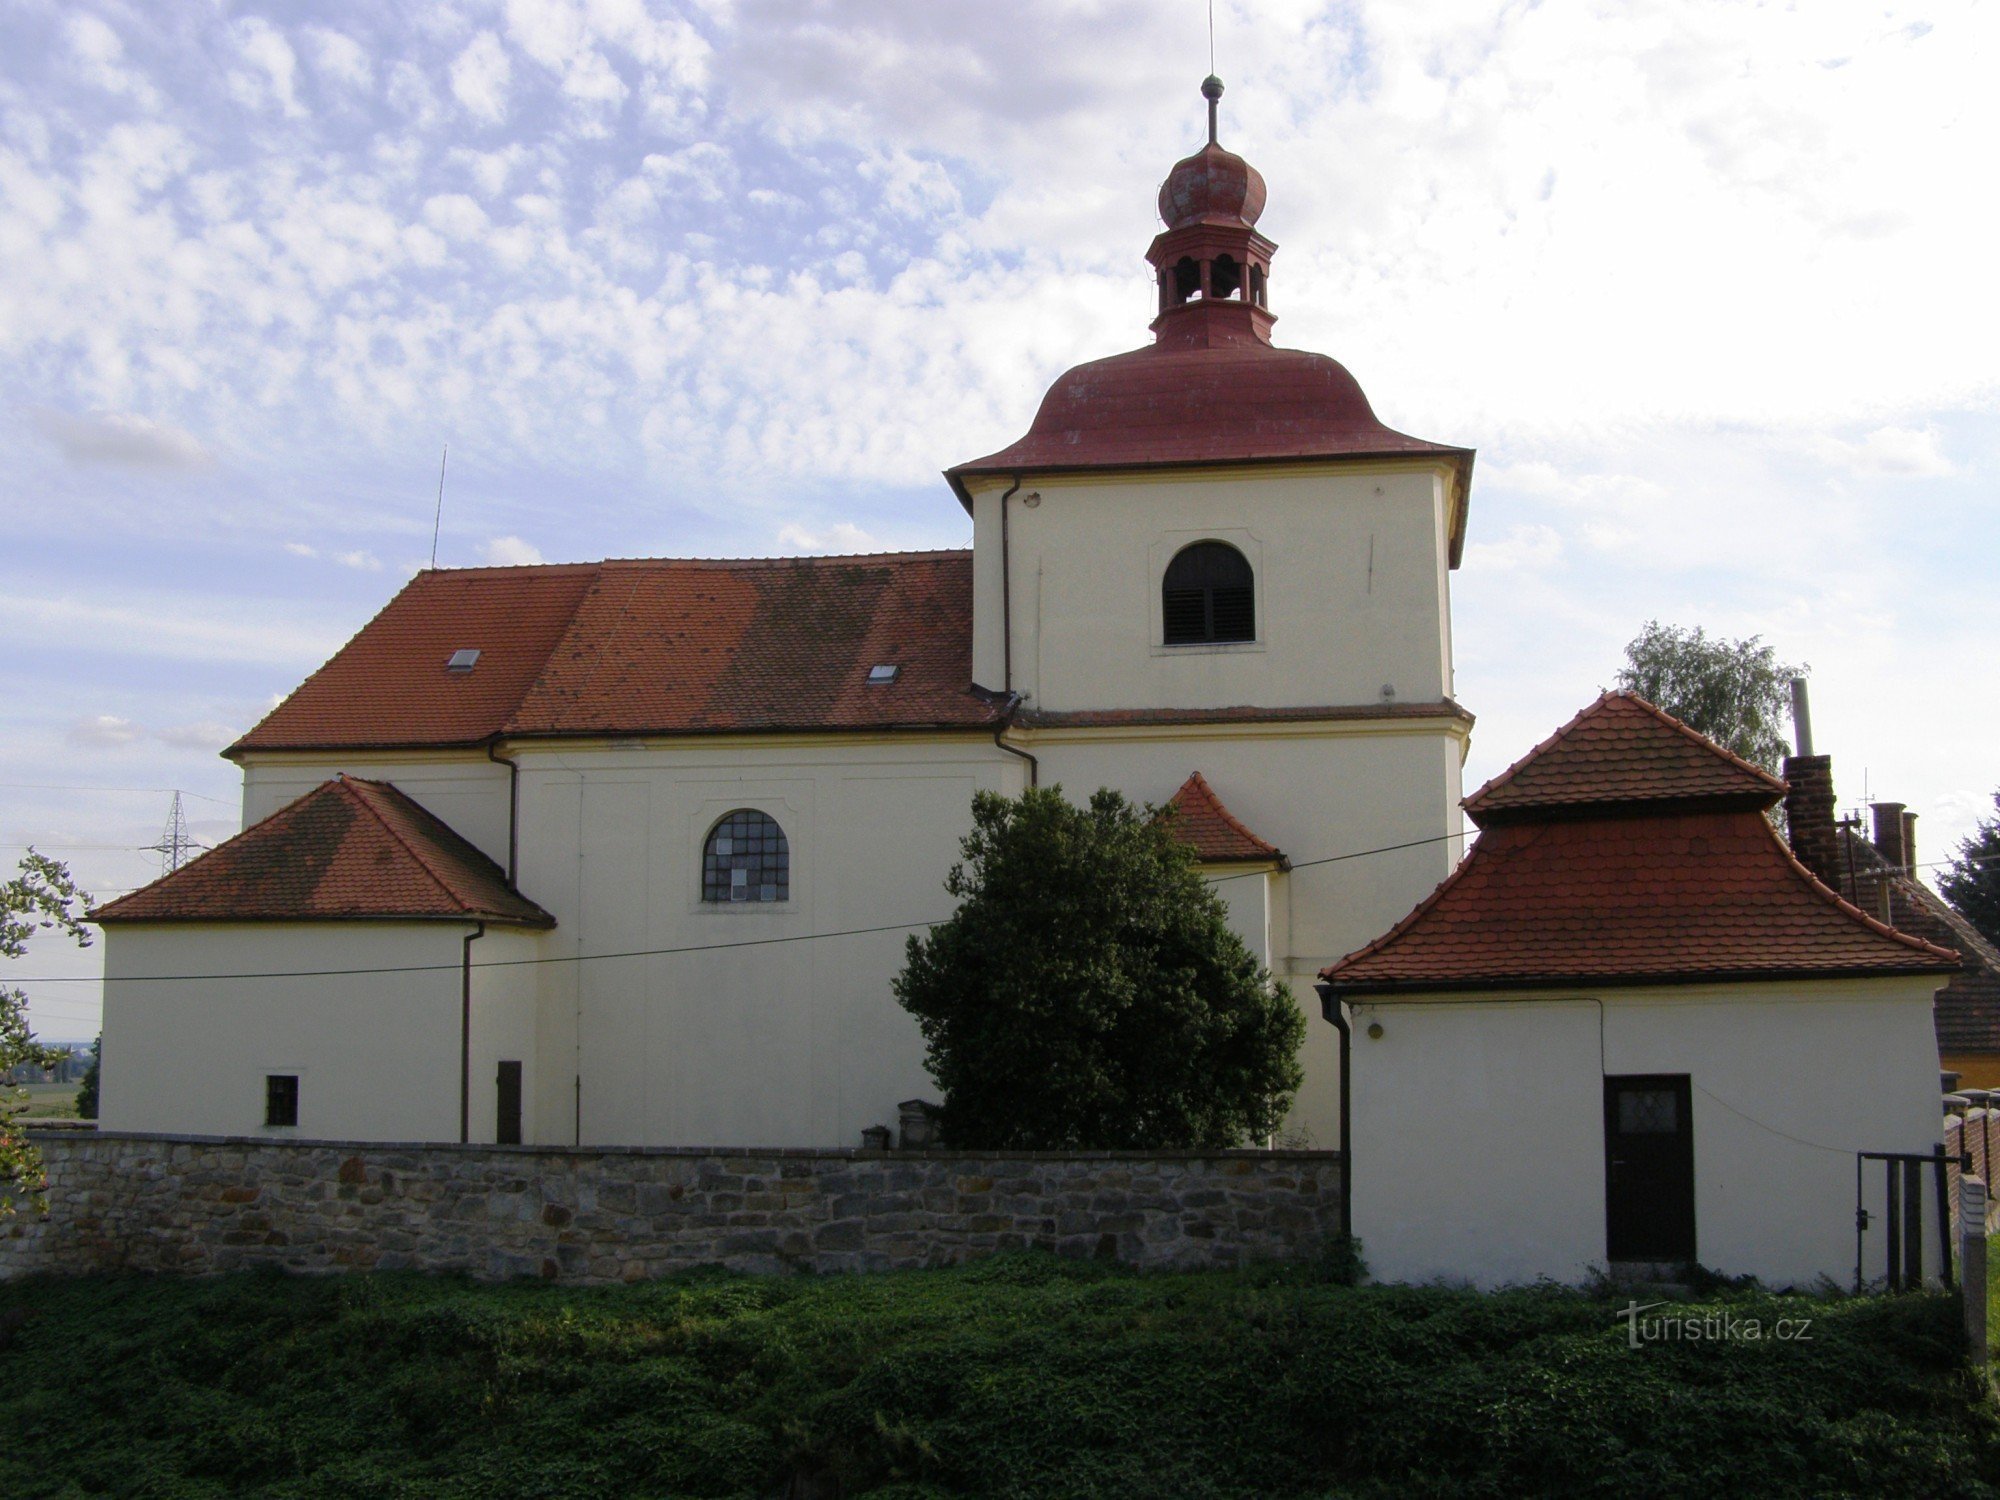 Сендражице - церква св. Станіслава